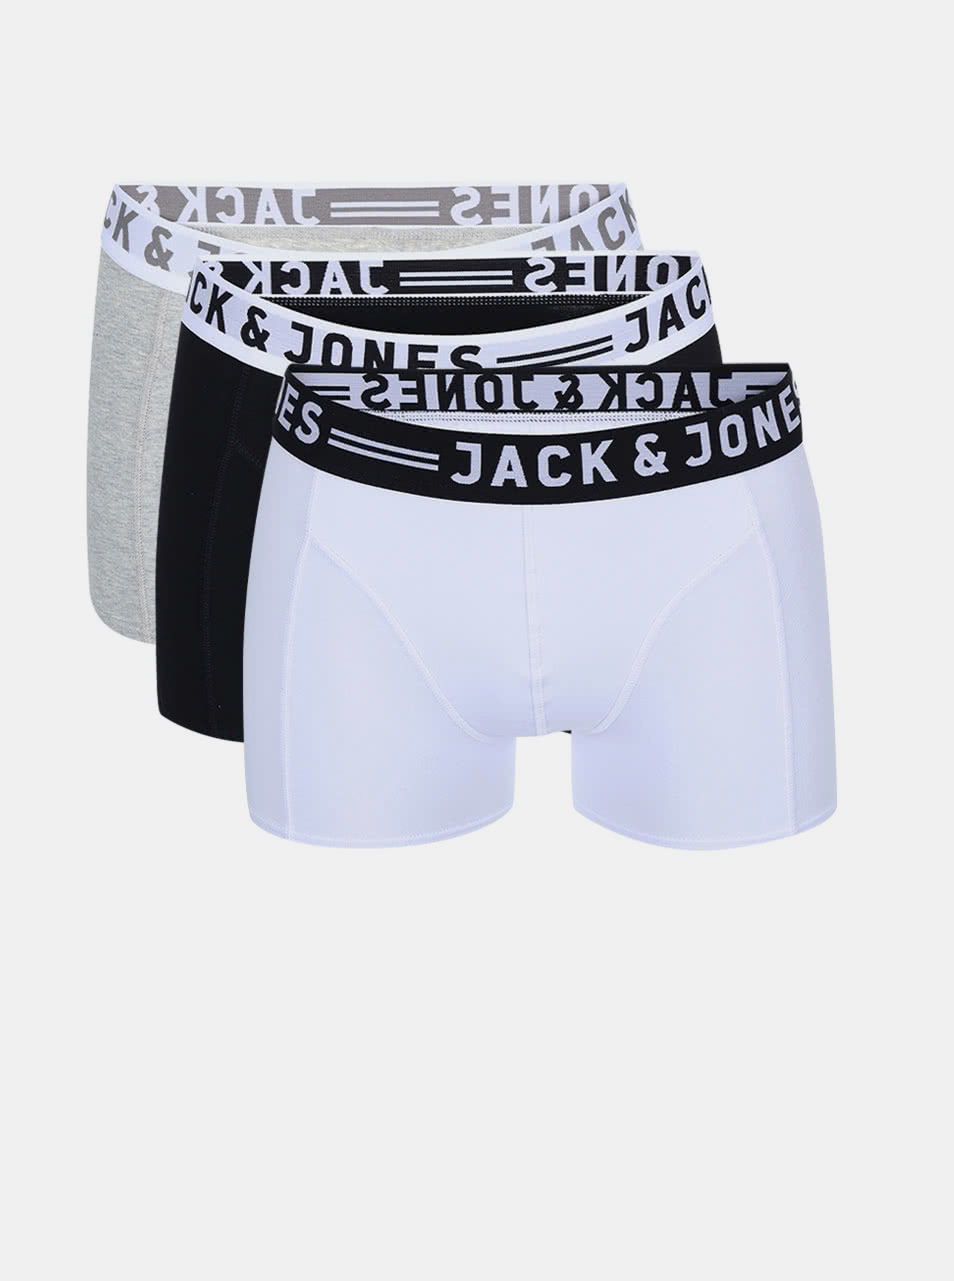 Sada tří boxerek v šedé, bílé a černé barvě Jack & Jones Sense